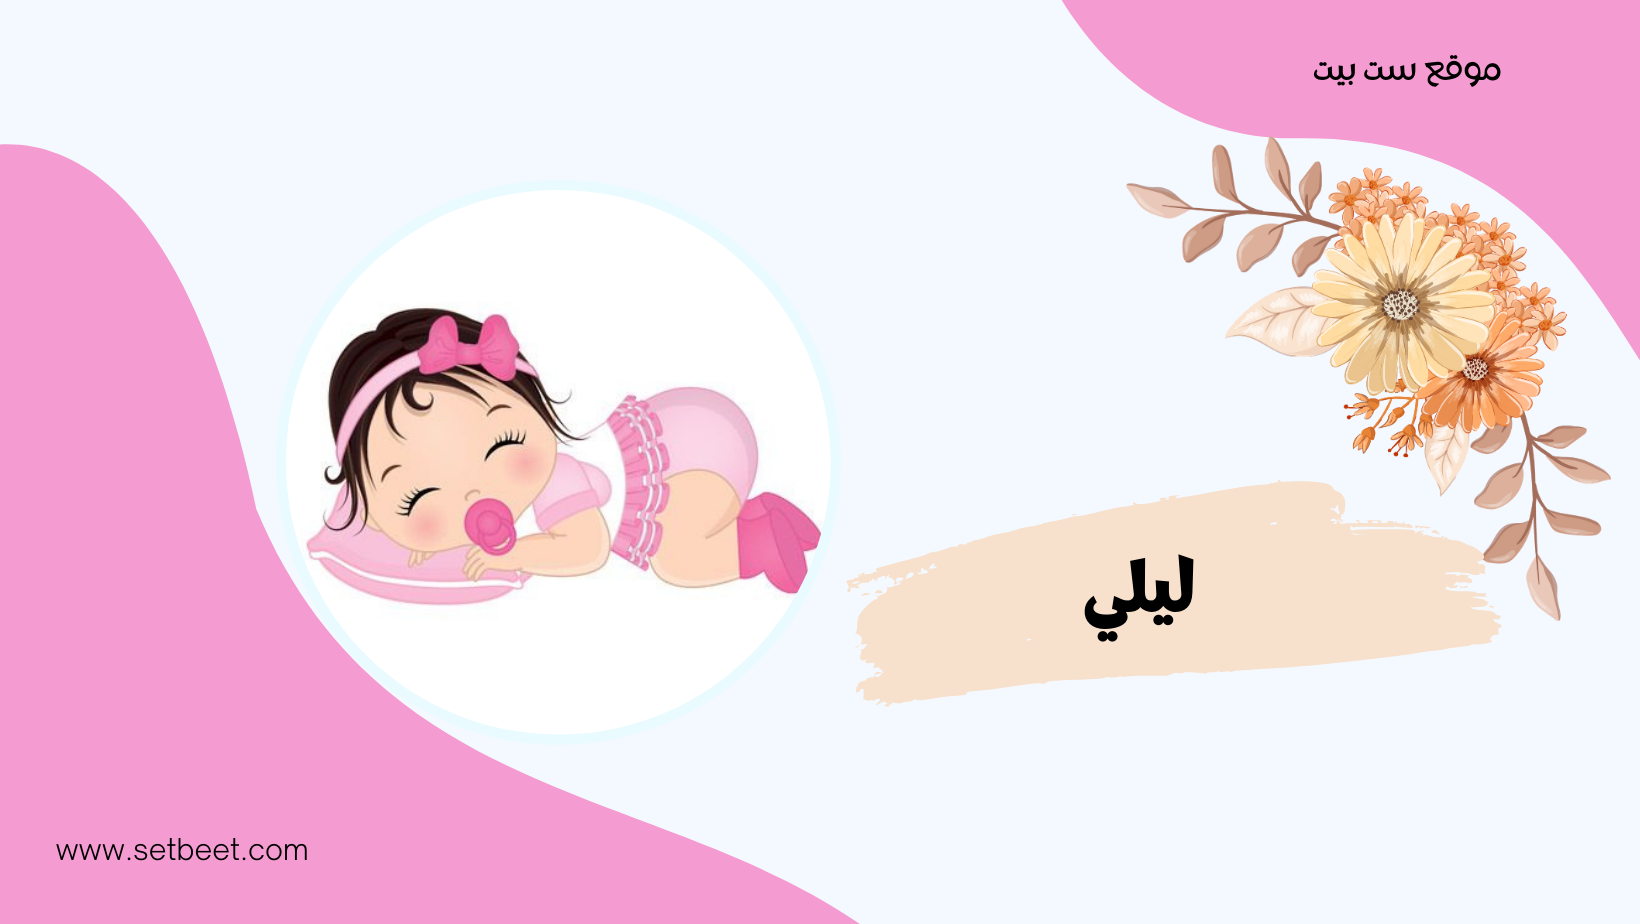 أسماء بنات حلوة وخفيفة - ليلى